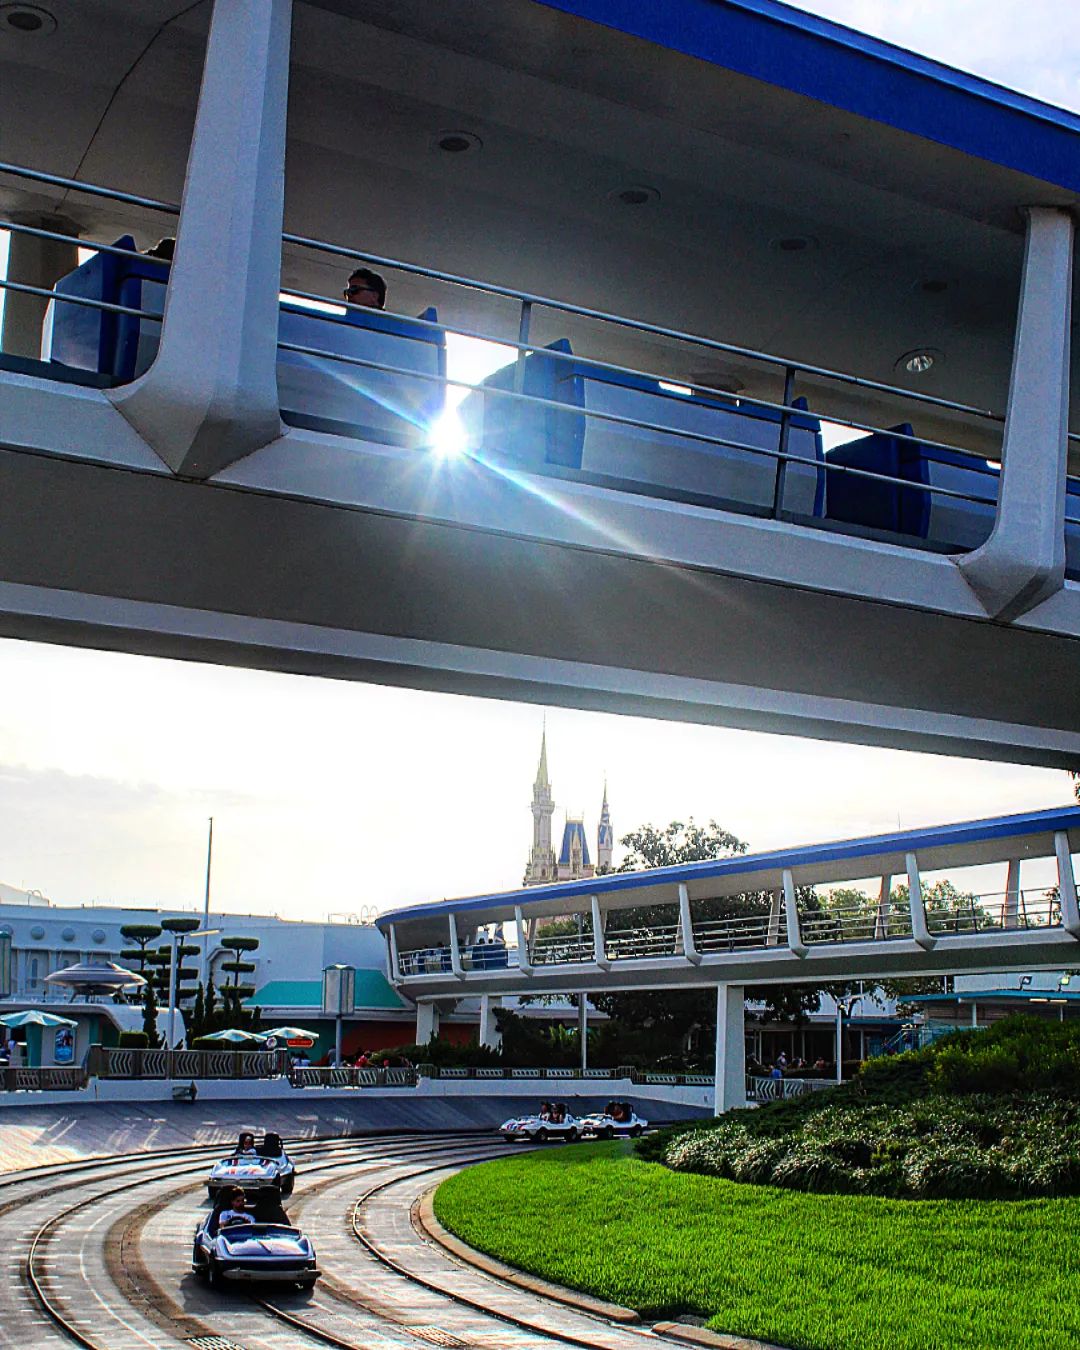 Tomorrowland - Magic Kingdom in Walt Disney World